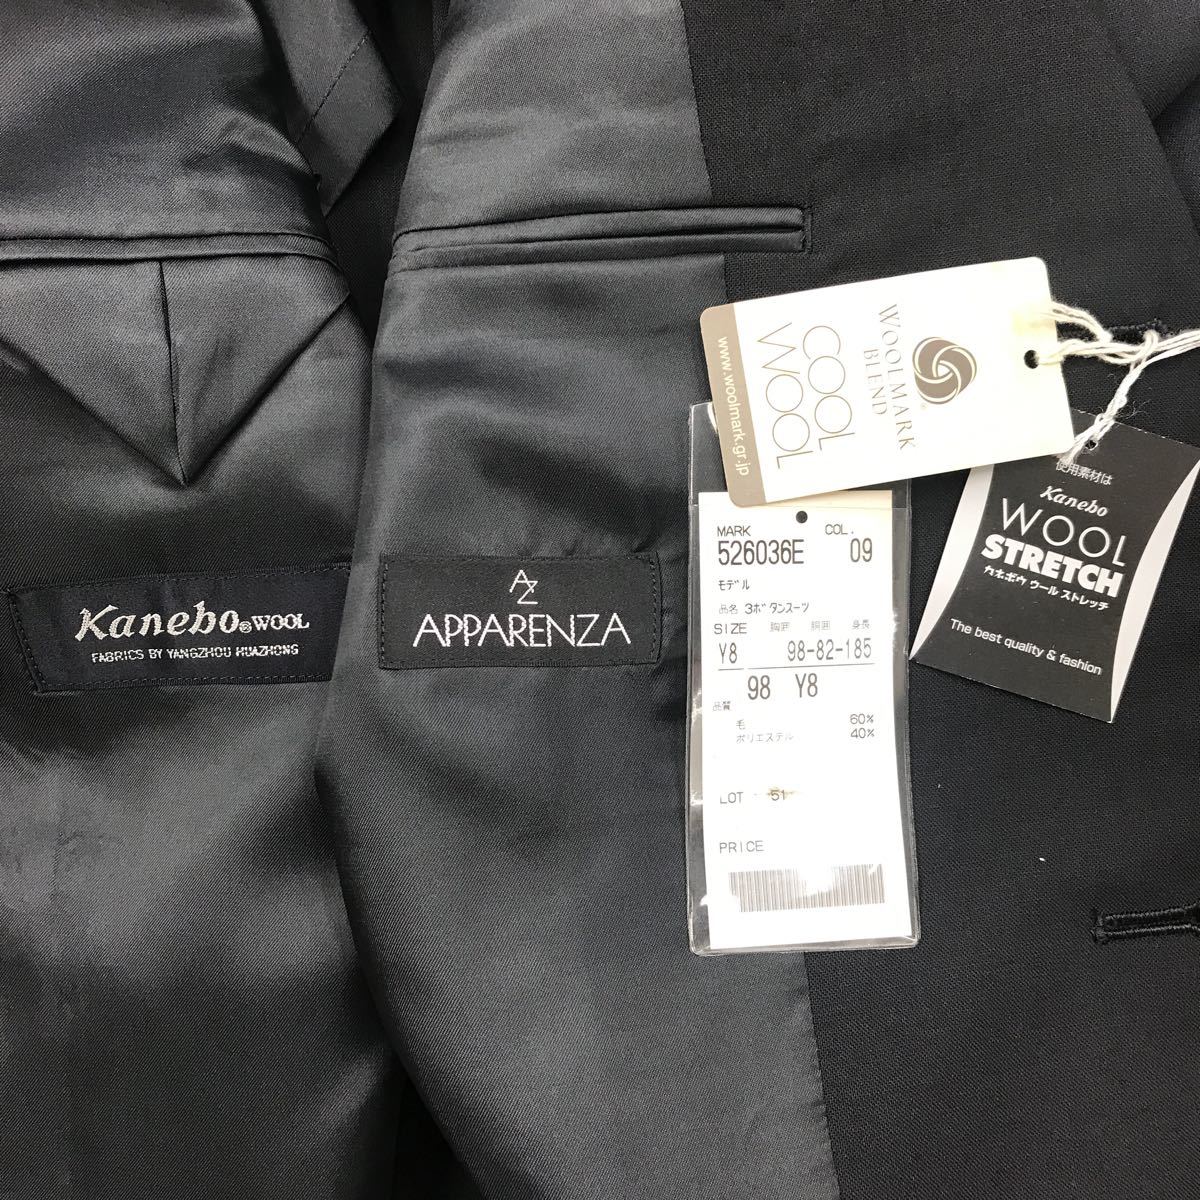 [ новый товар не использовался ]* Kanebo костюм * супер-скидка /. одежда lik route костюм / большой размер Y8* черный цвет * чёрный /no- Benz 2 tuck Kanebo товар 